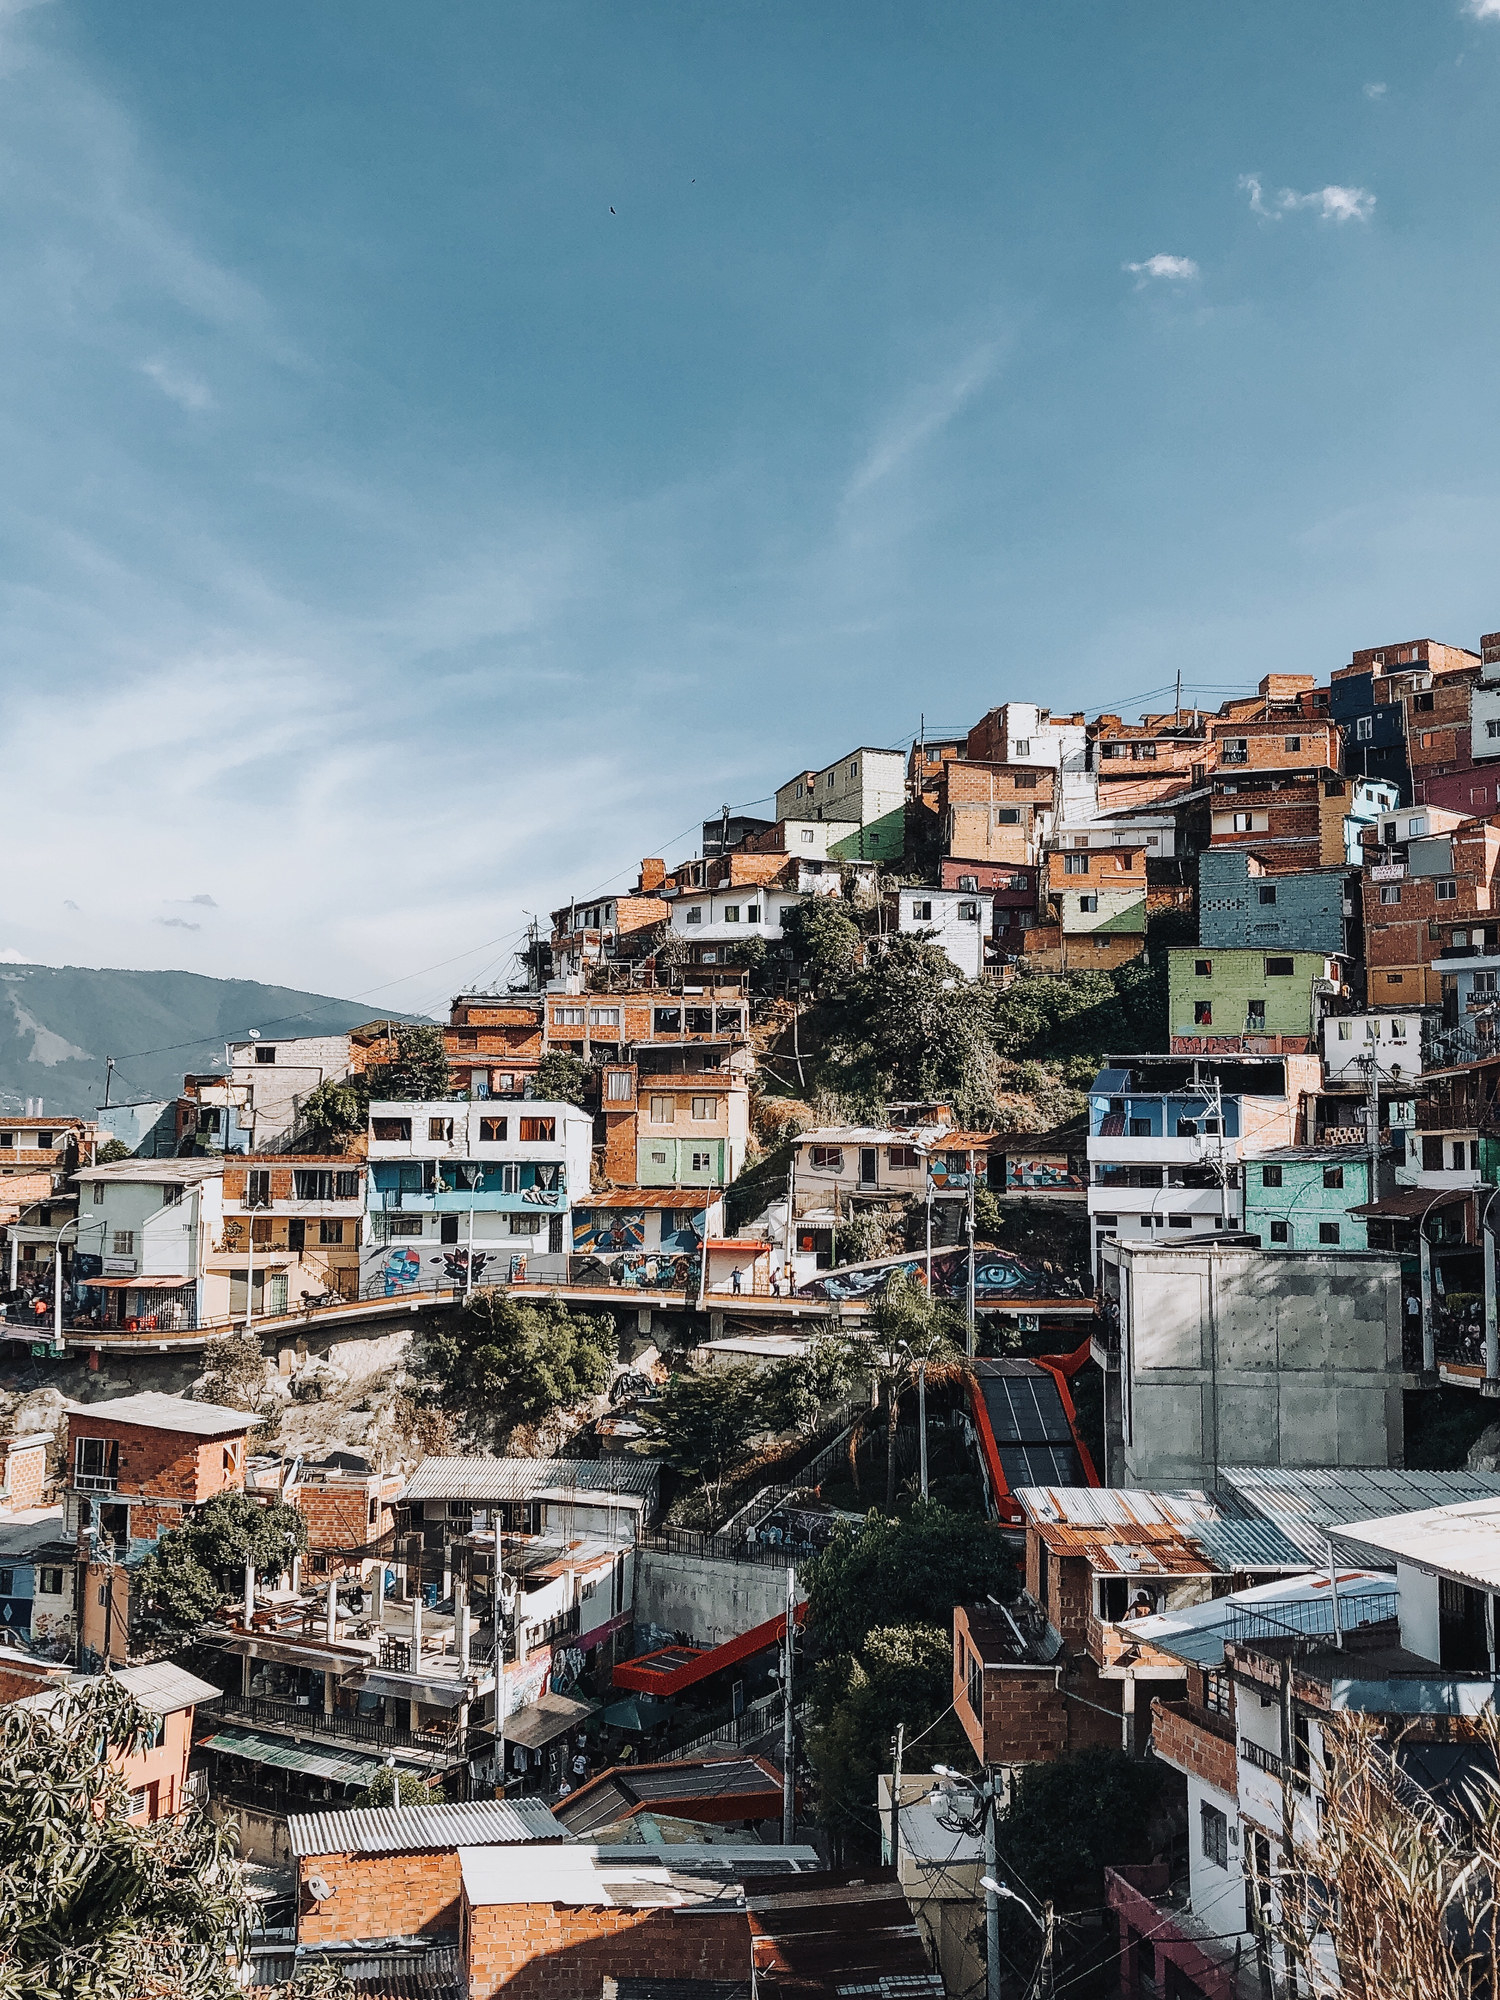 A cityscape of Comuna 13 in Medellin.